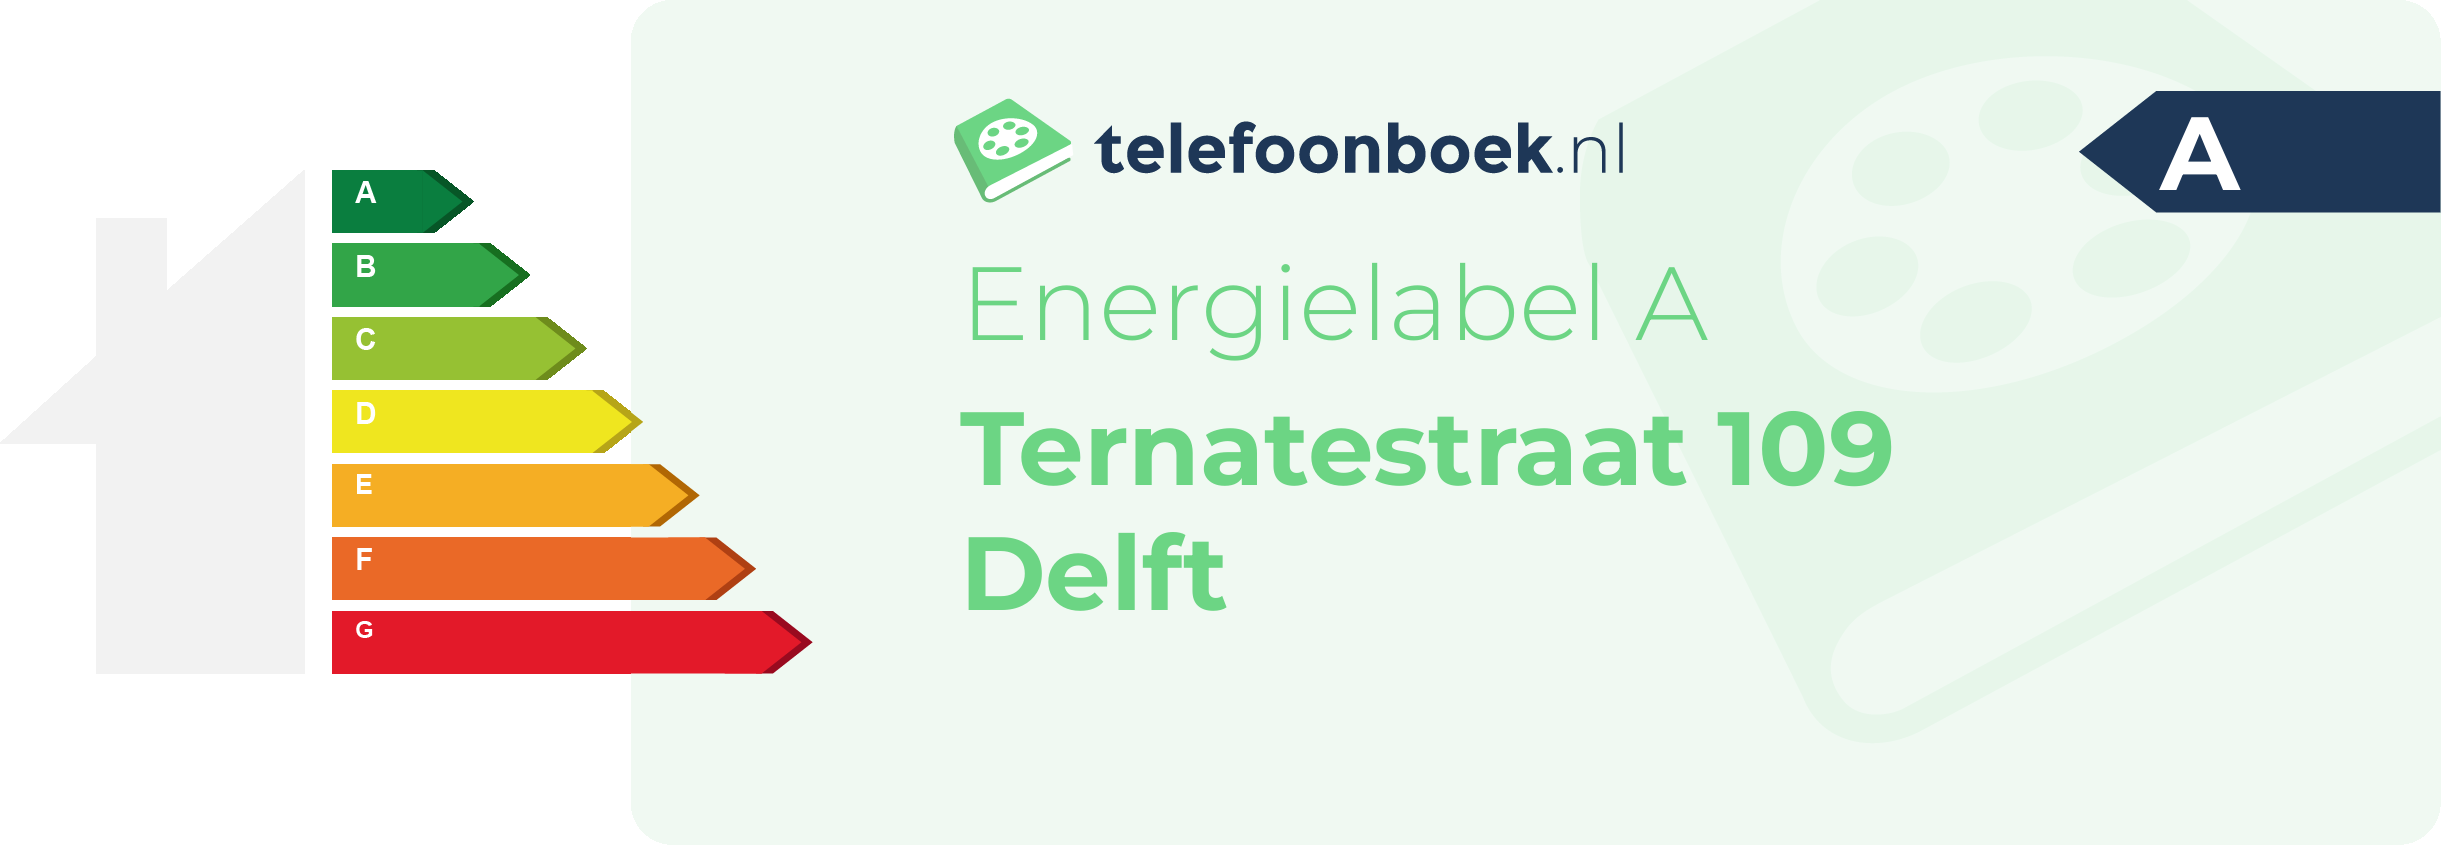 Energielabel Ternatestraat 109 Delft